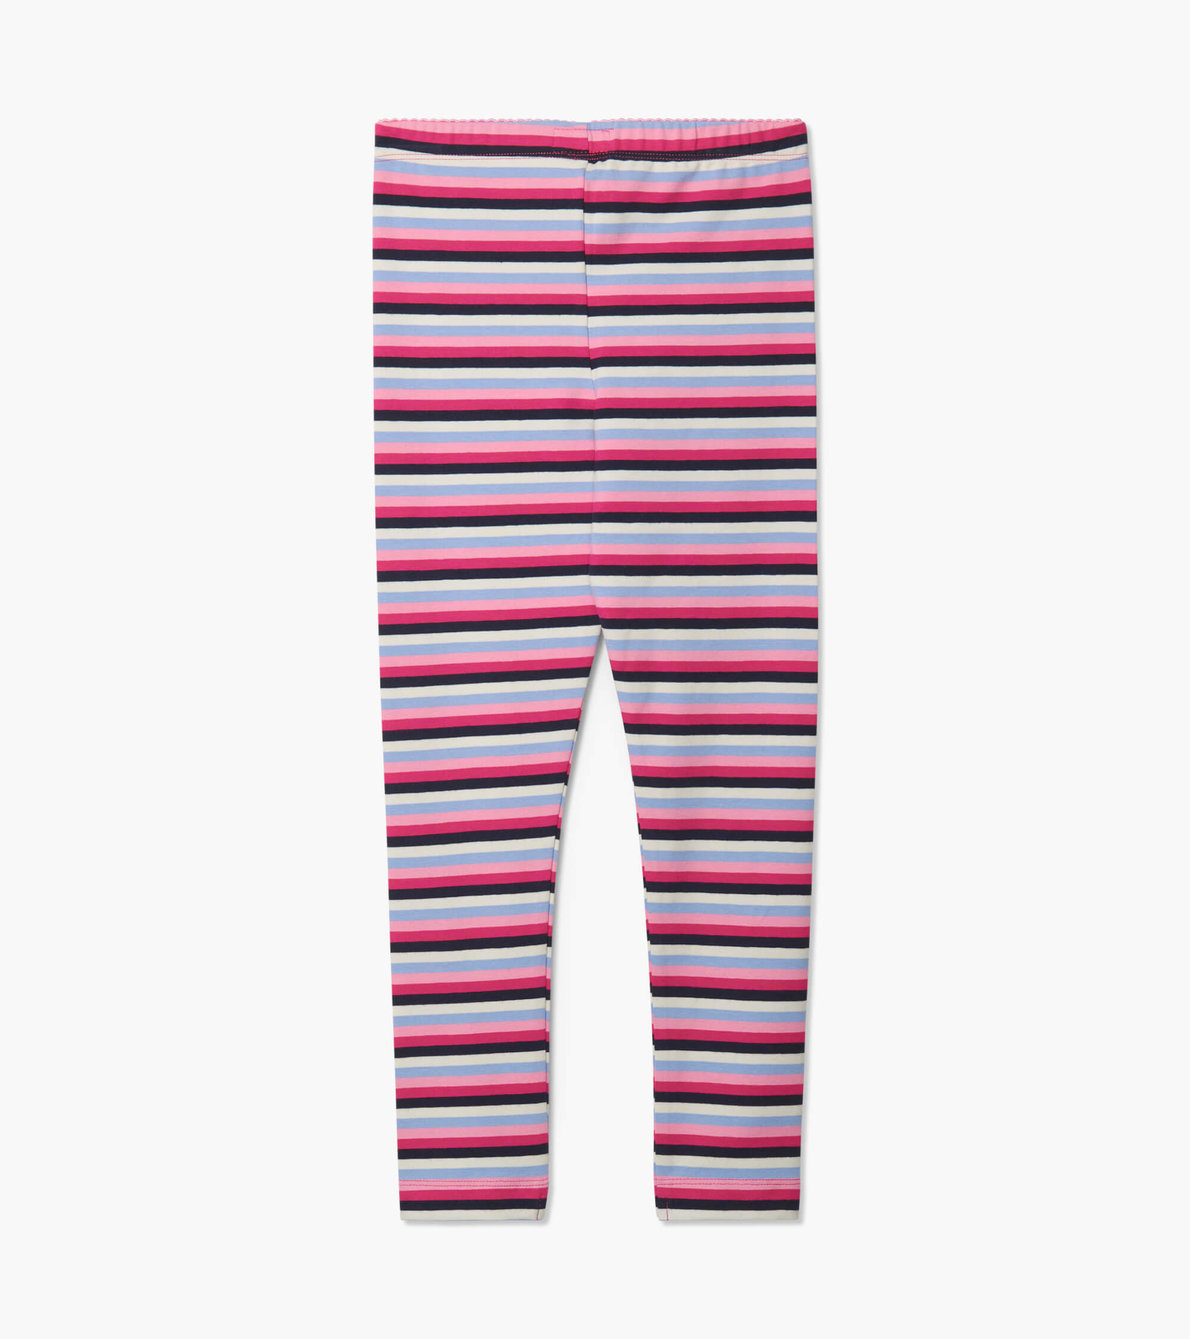 View larger image of Pink Denim Stripe Leggings